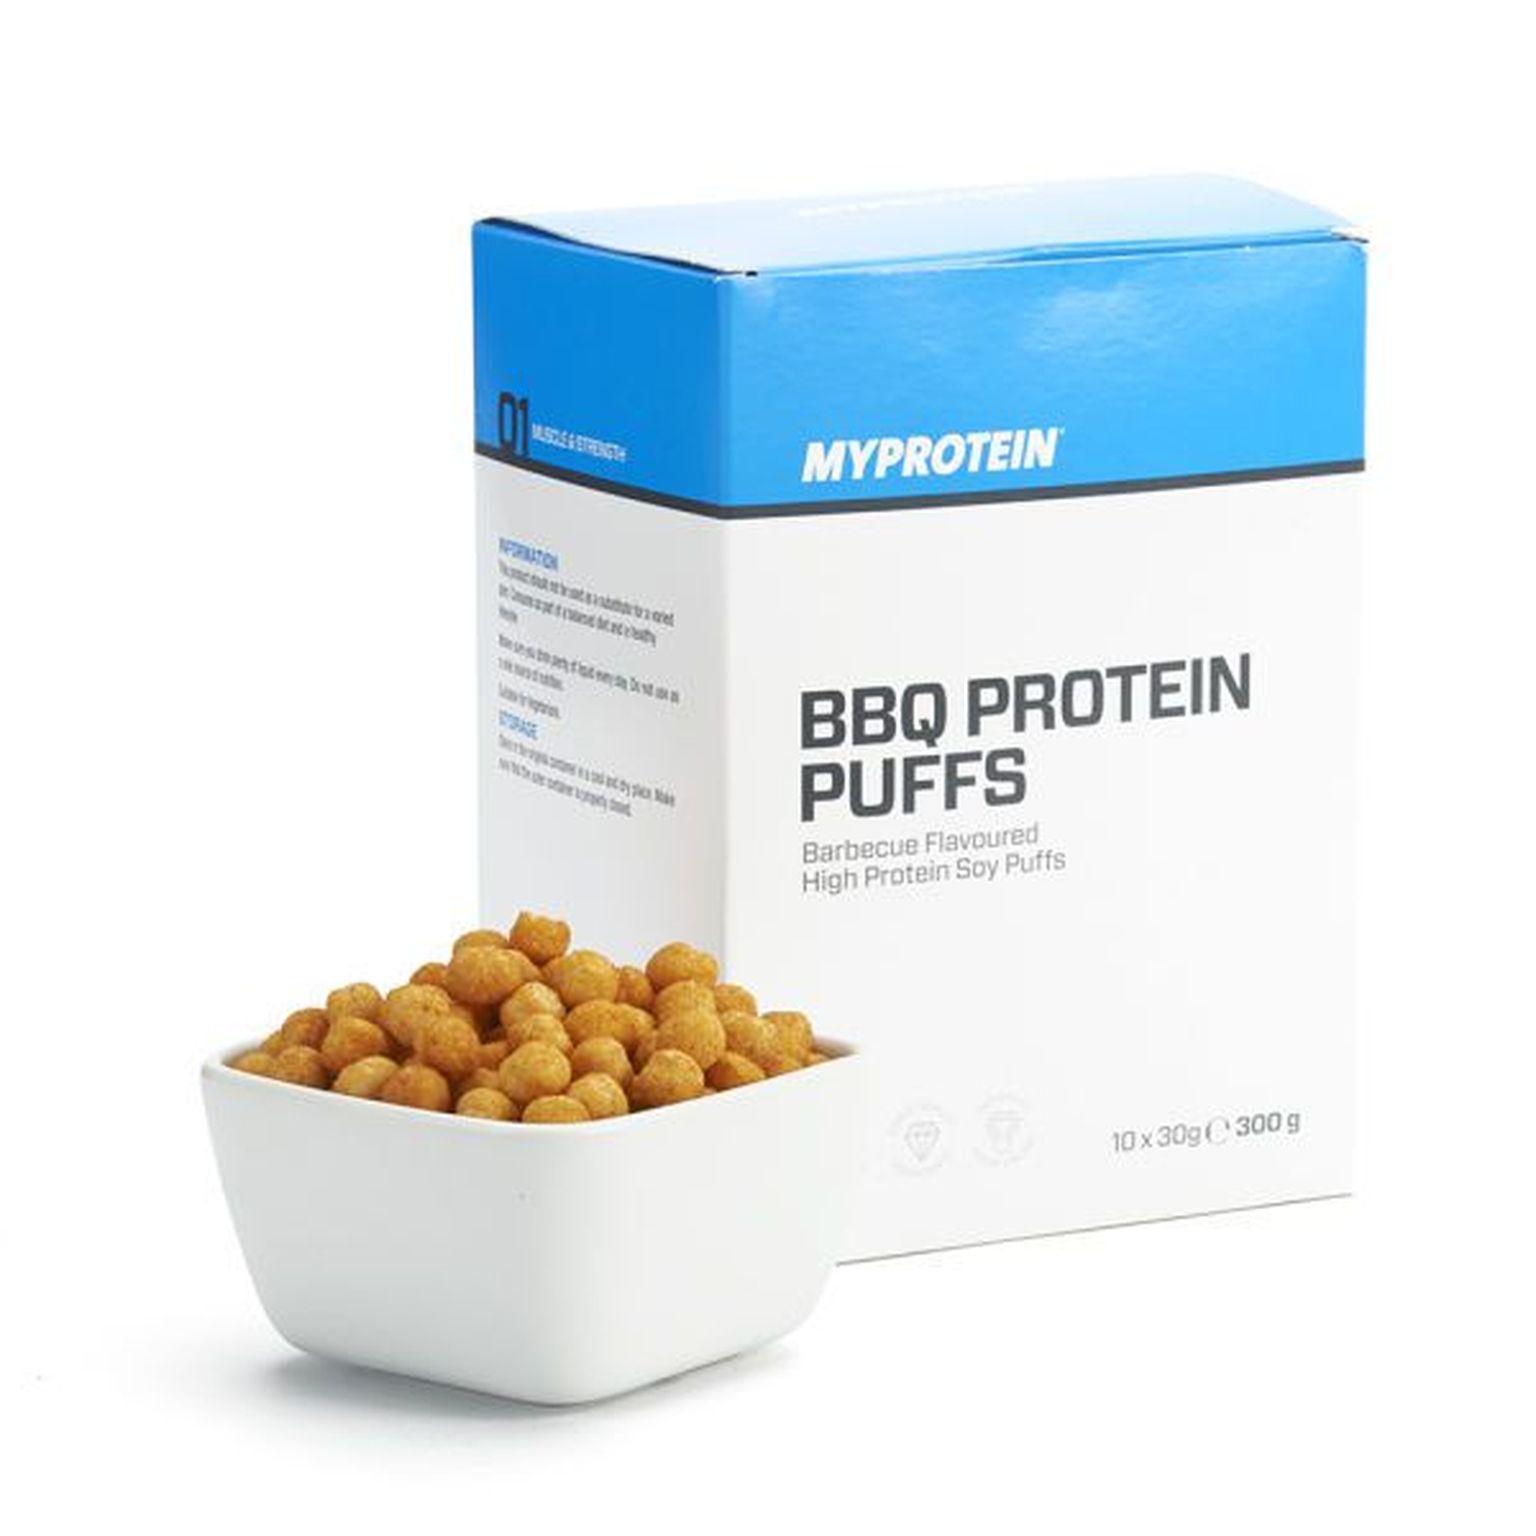 Tagasi kutsutavatesse proteiinisnäkkidesse on sattunud ka teist toodet - «BBQ Protein Puffs», mis sisaldab ka nisu.